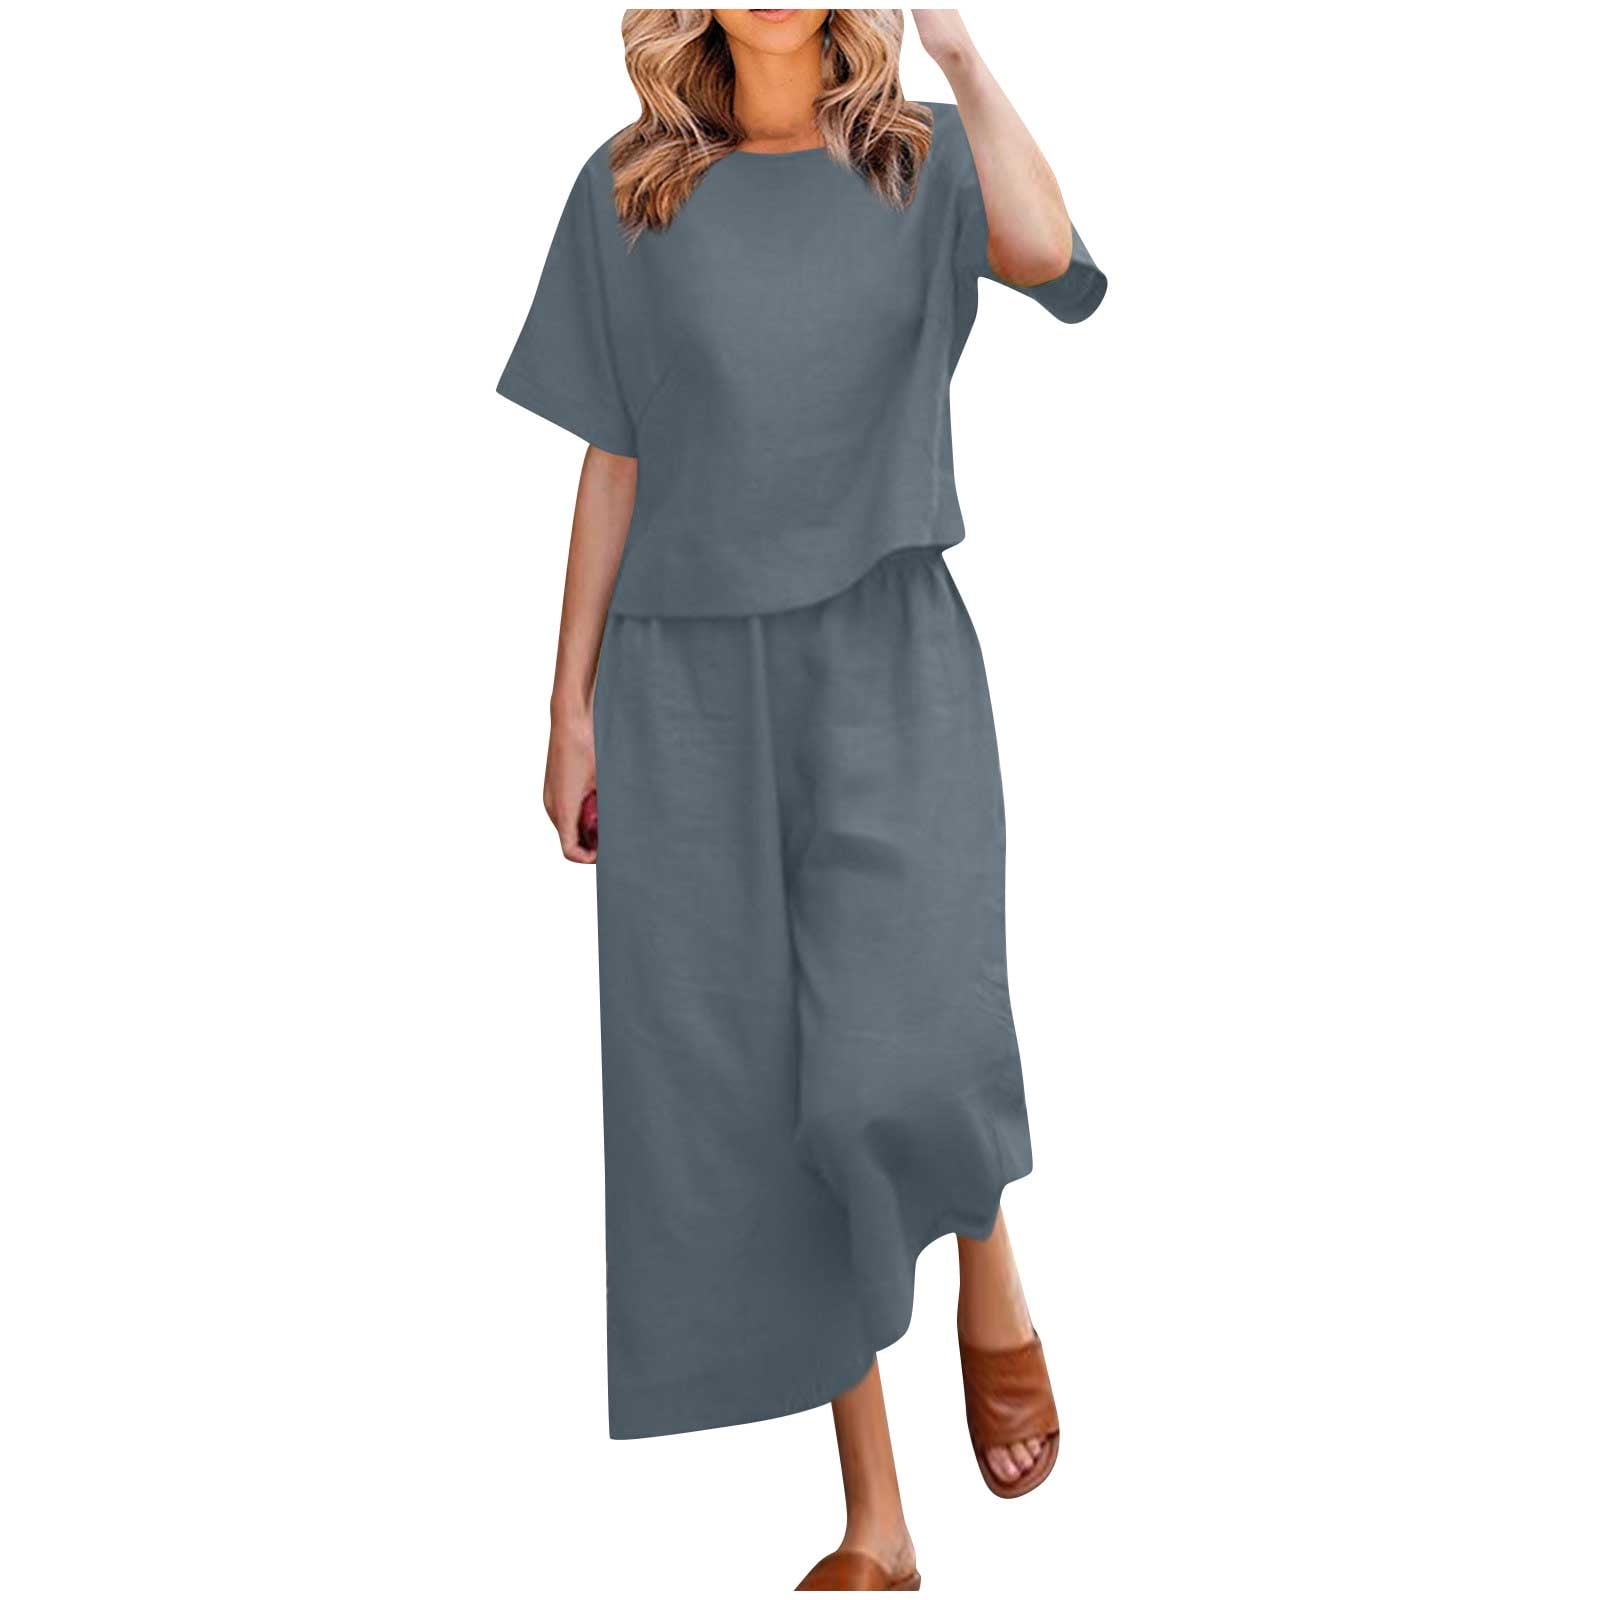 Women's Summer Cotton Linen Solid Sets 2 Piece Plus Size Casual Short ...